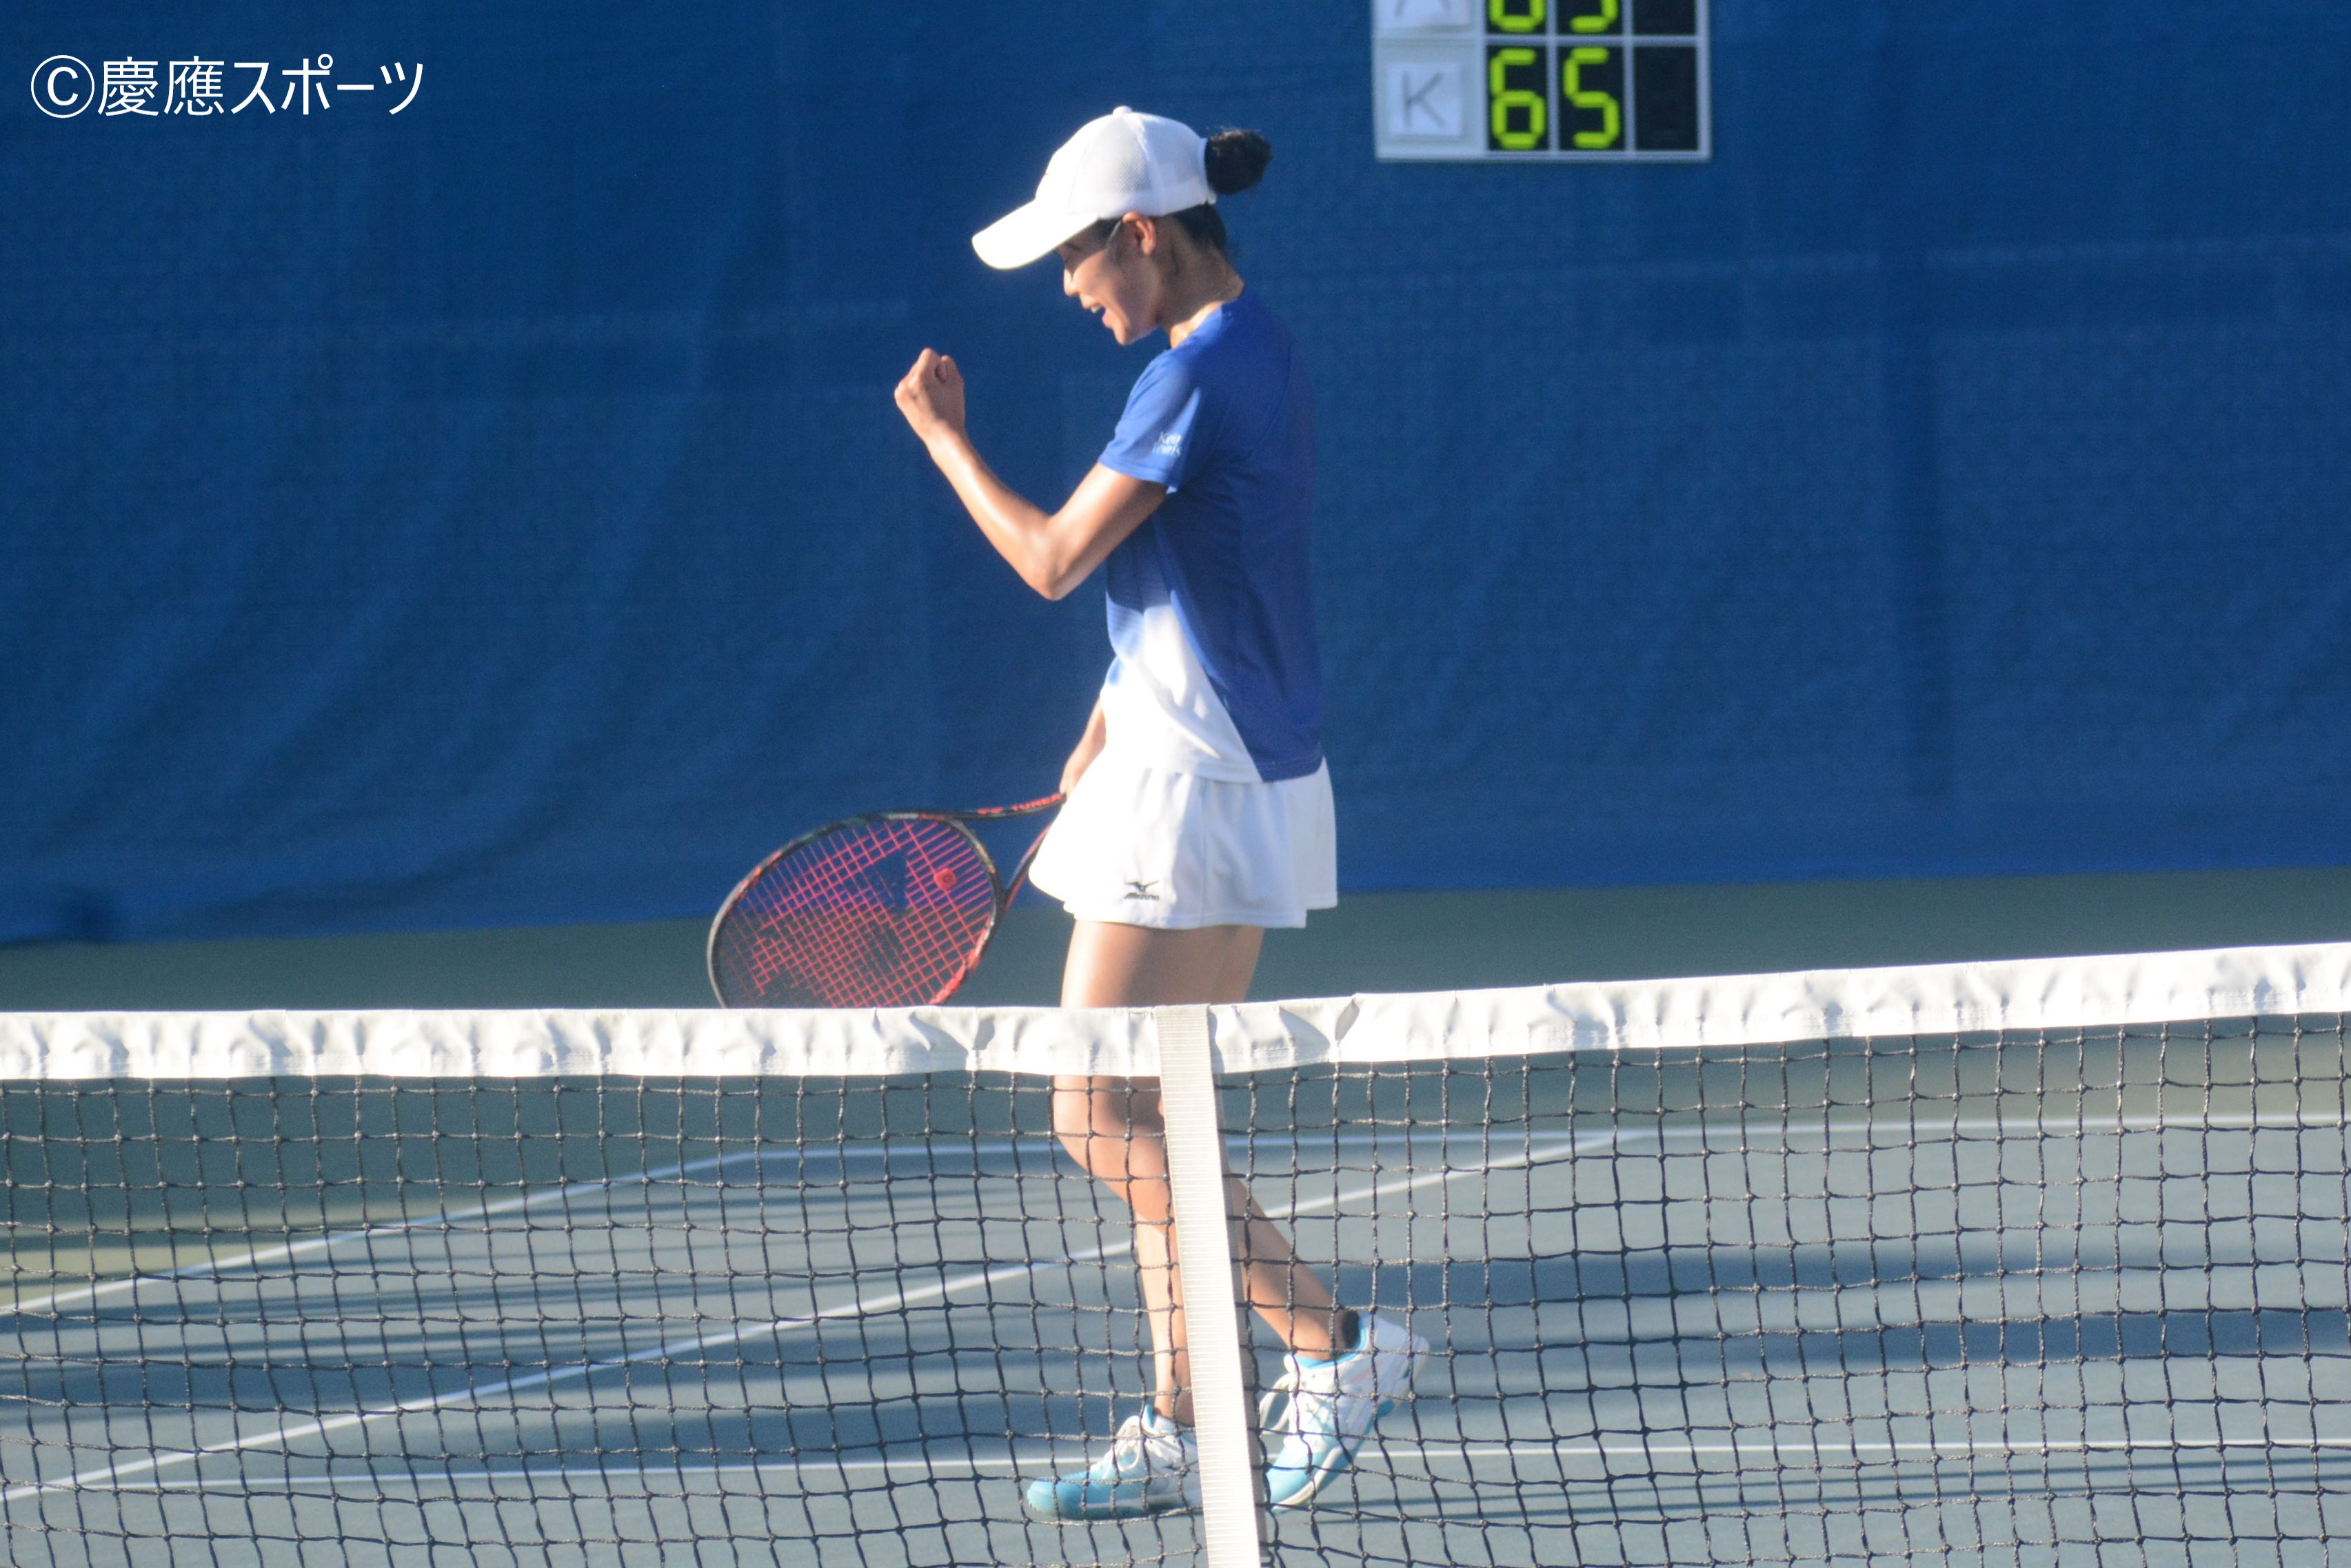 テニス 女子 シングルスで圧倒し 強敵 亜大に勝利 関東大学テニスリーグ 亜大戦 Keio Sports Press